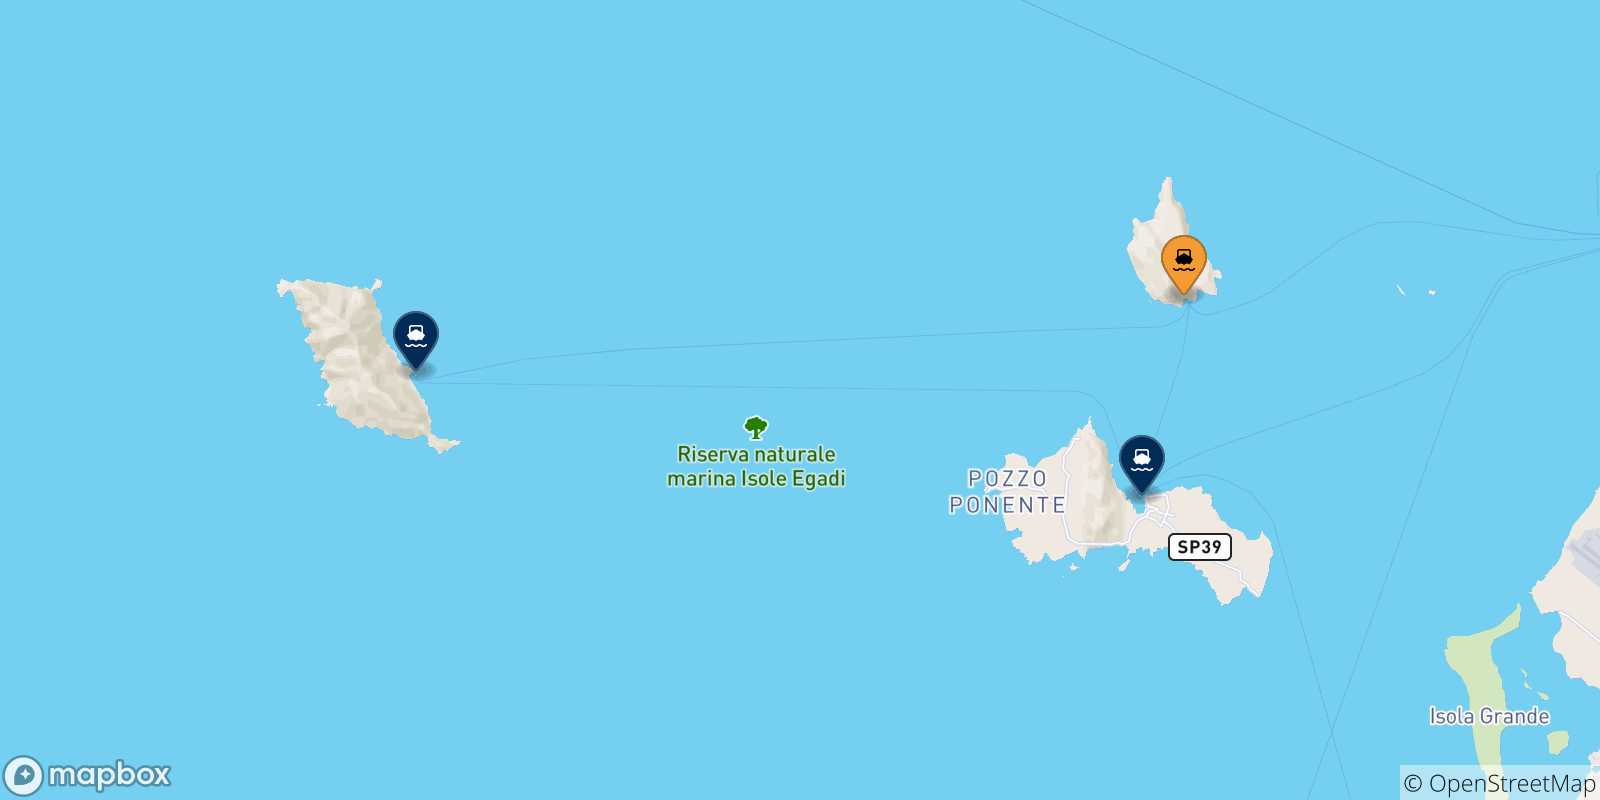 Mappa delle possibili rotte tra Levanzo e le Isole Egadi